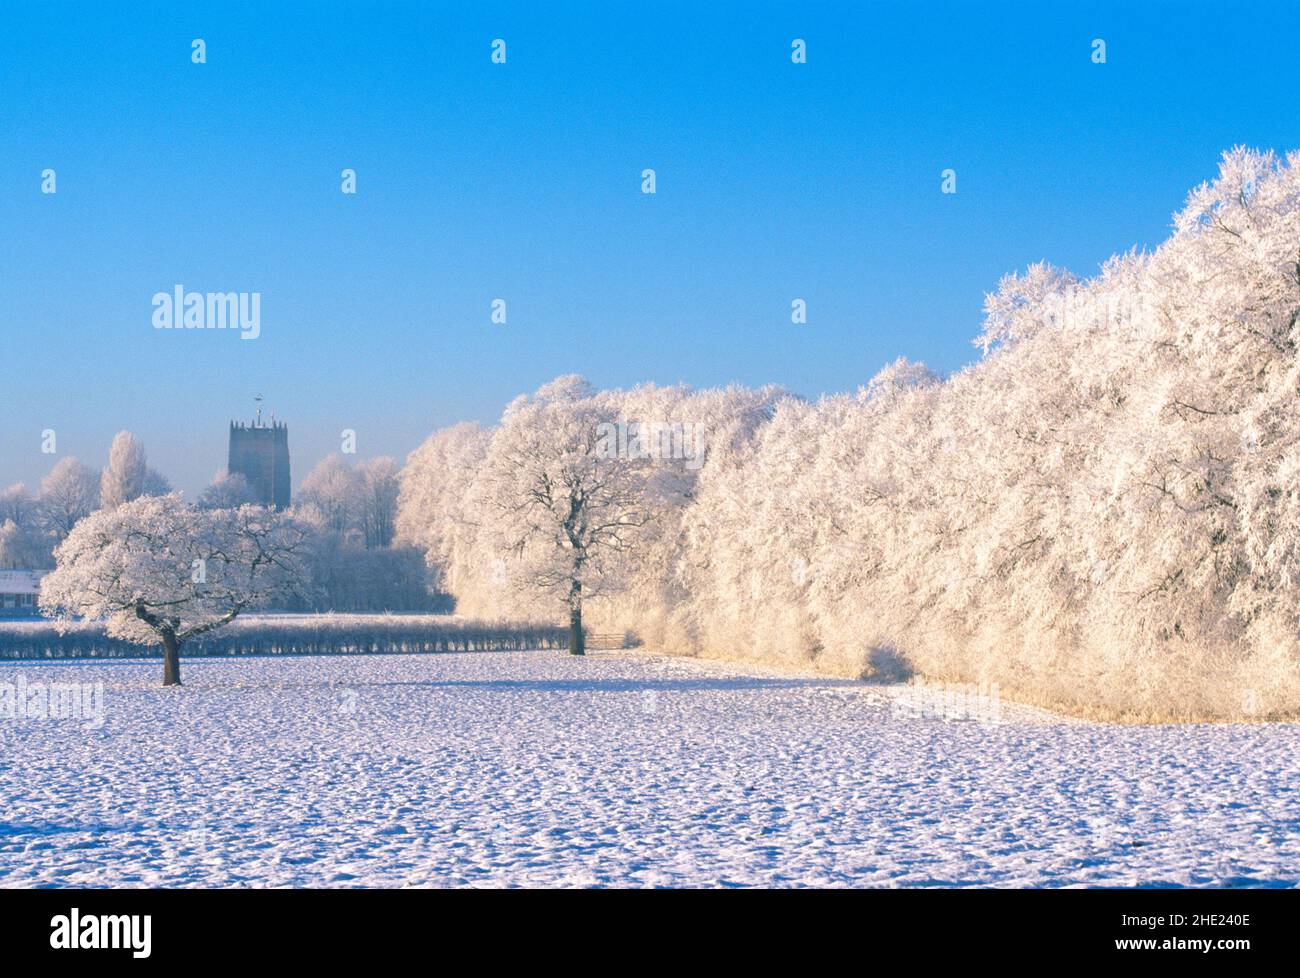 UK, England, Cheshire, Great Budworth, winter landscape, Stock Photo